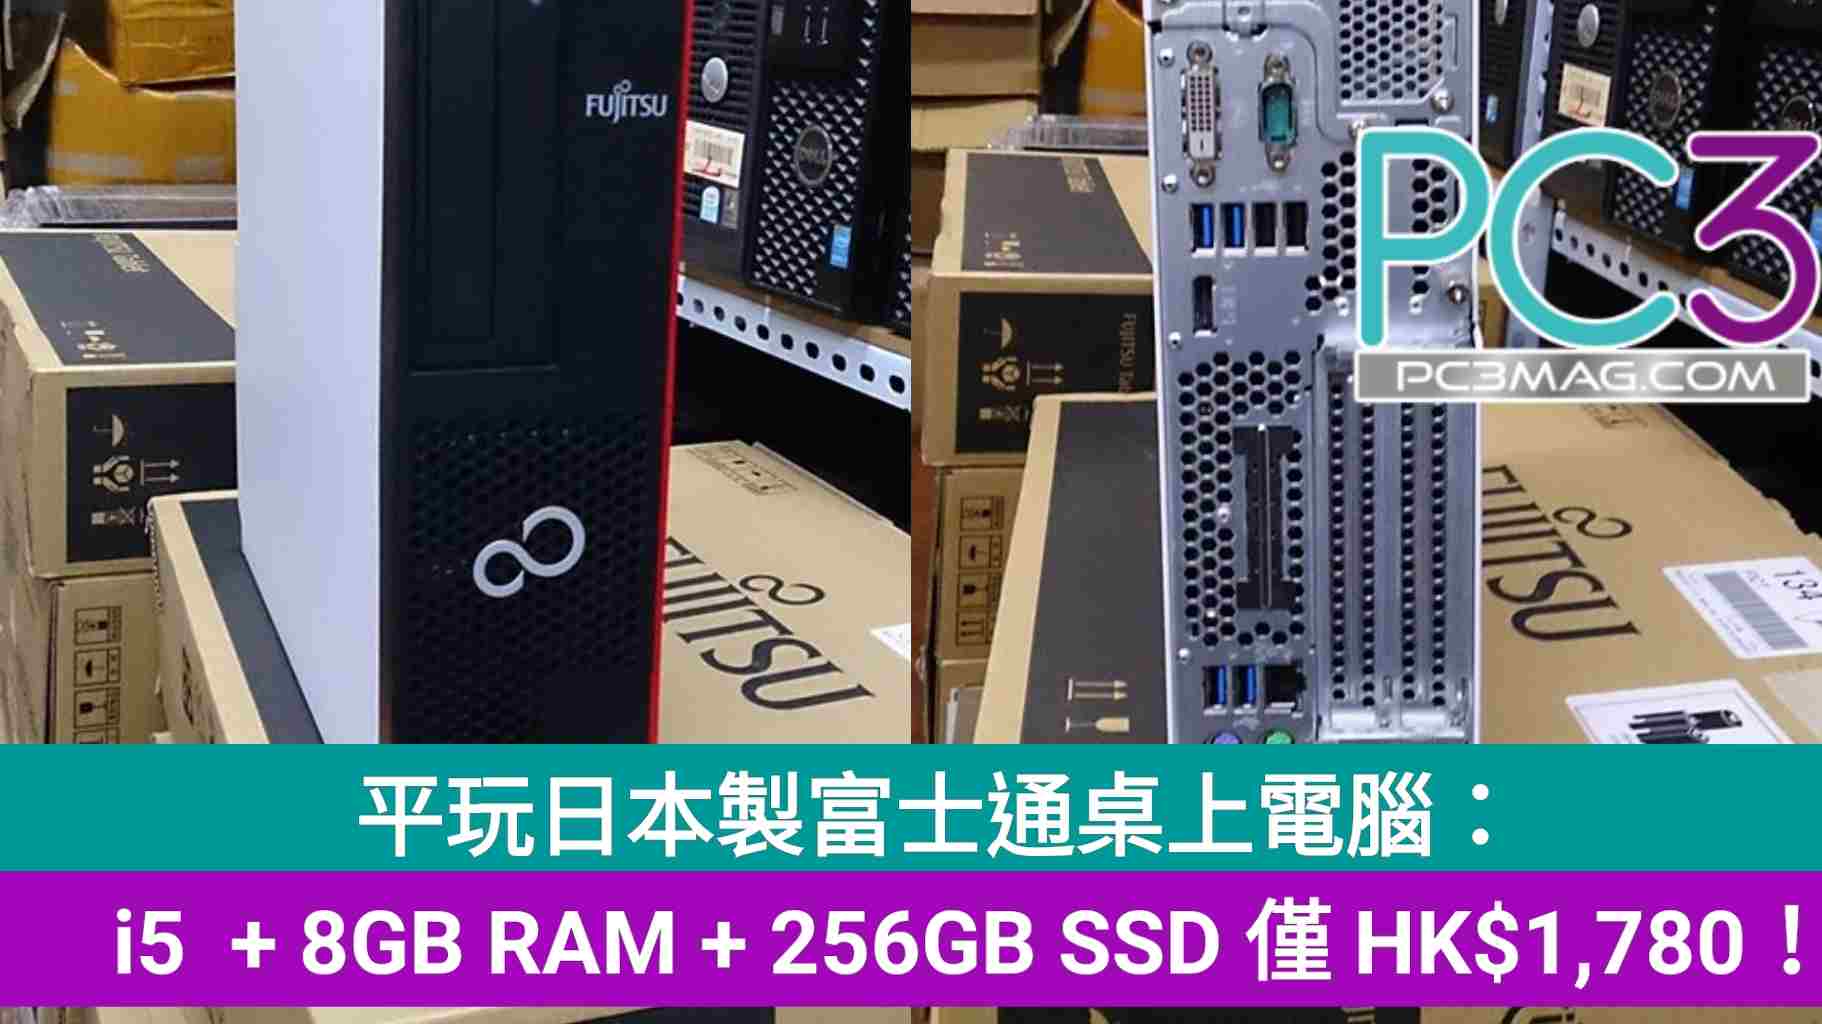 平玩日本製富士通桌上電腦： i5 + 8GB RAM + 256GB SSD 僅HK$1,780 